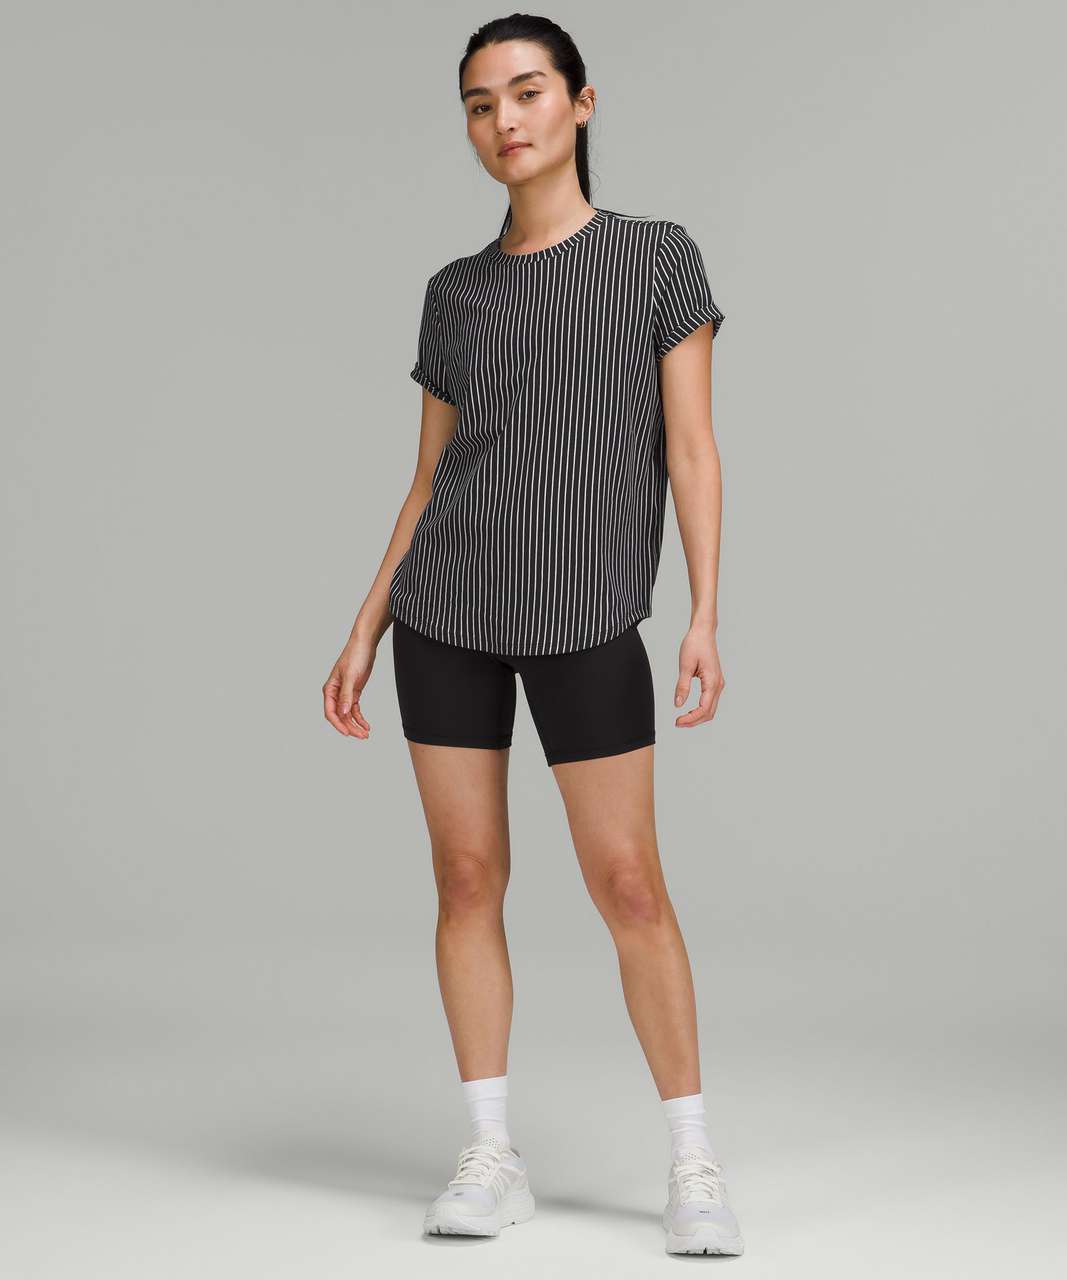 Lululemon Love Crew T-Shirt - Vertical Parallel Stripe Black White